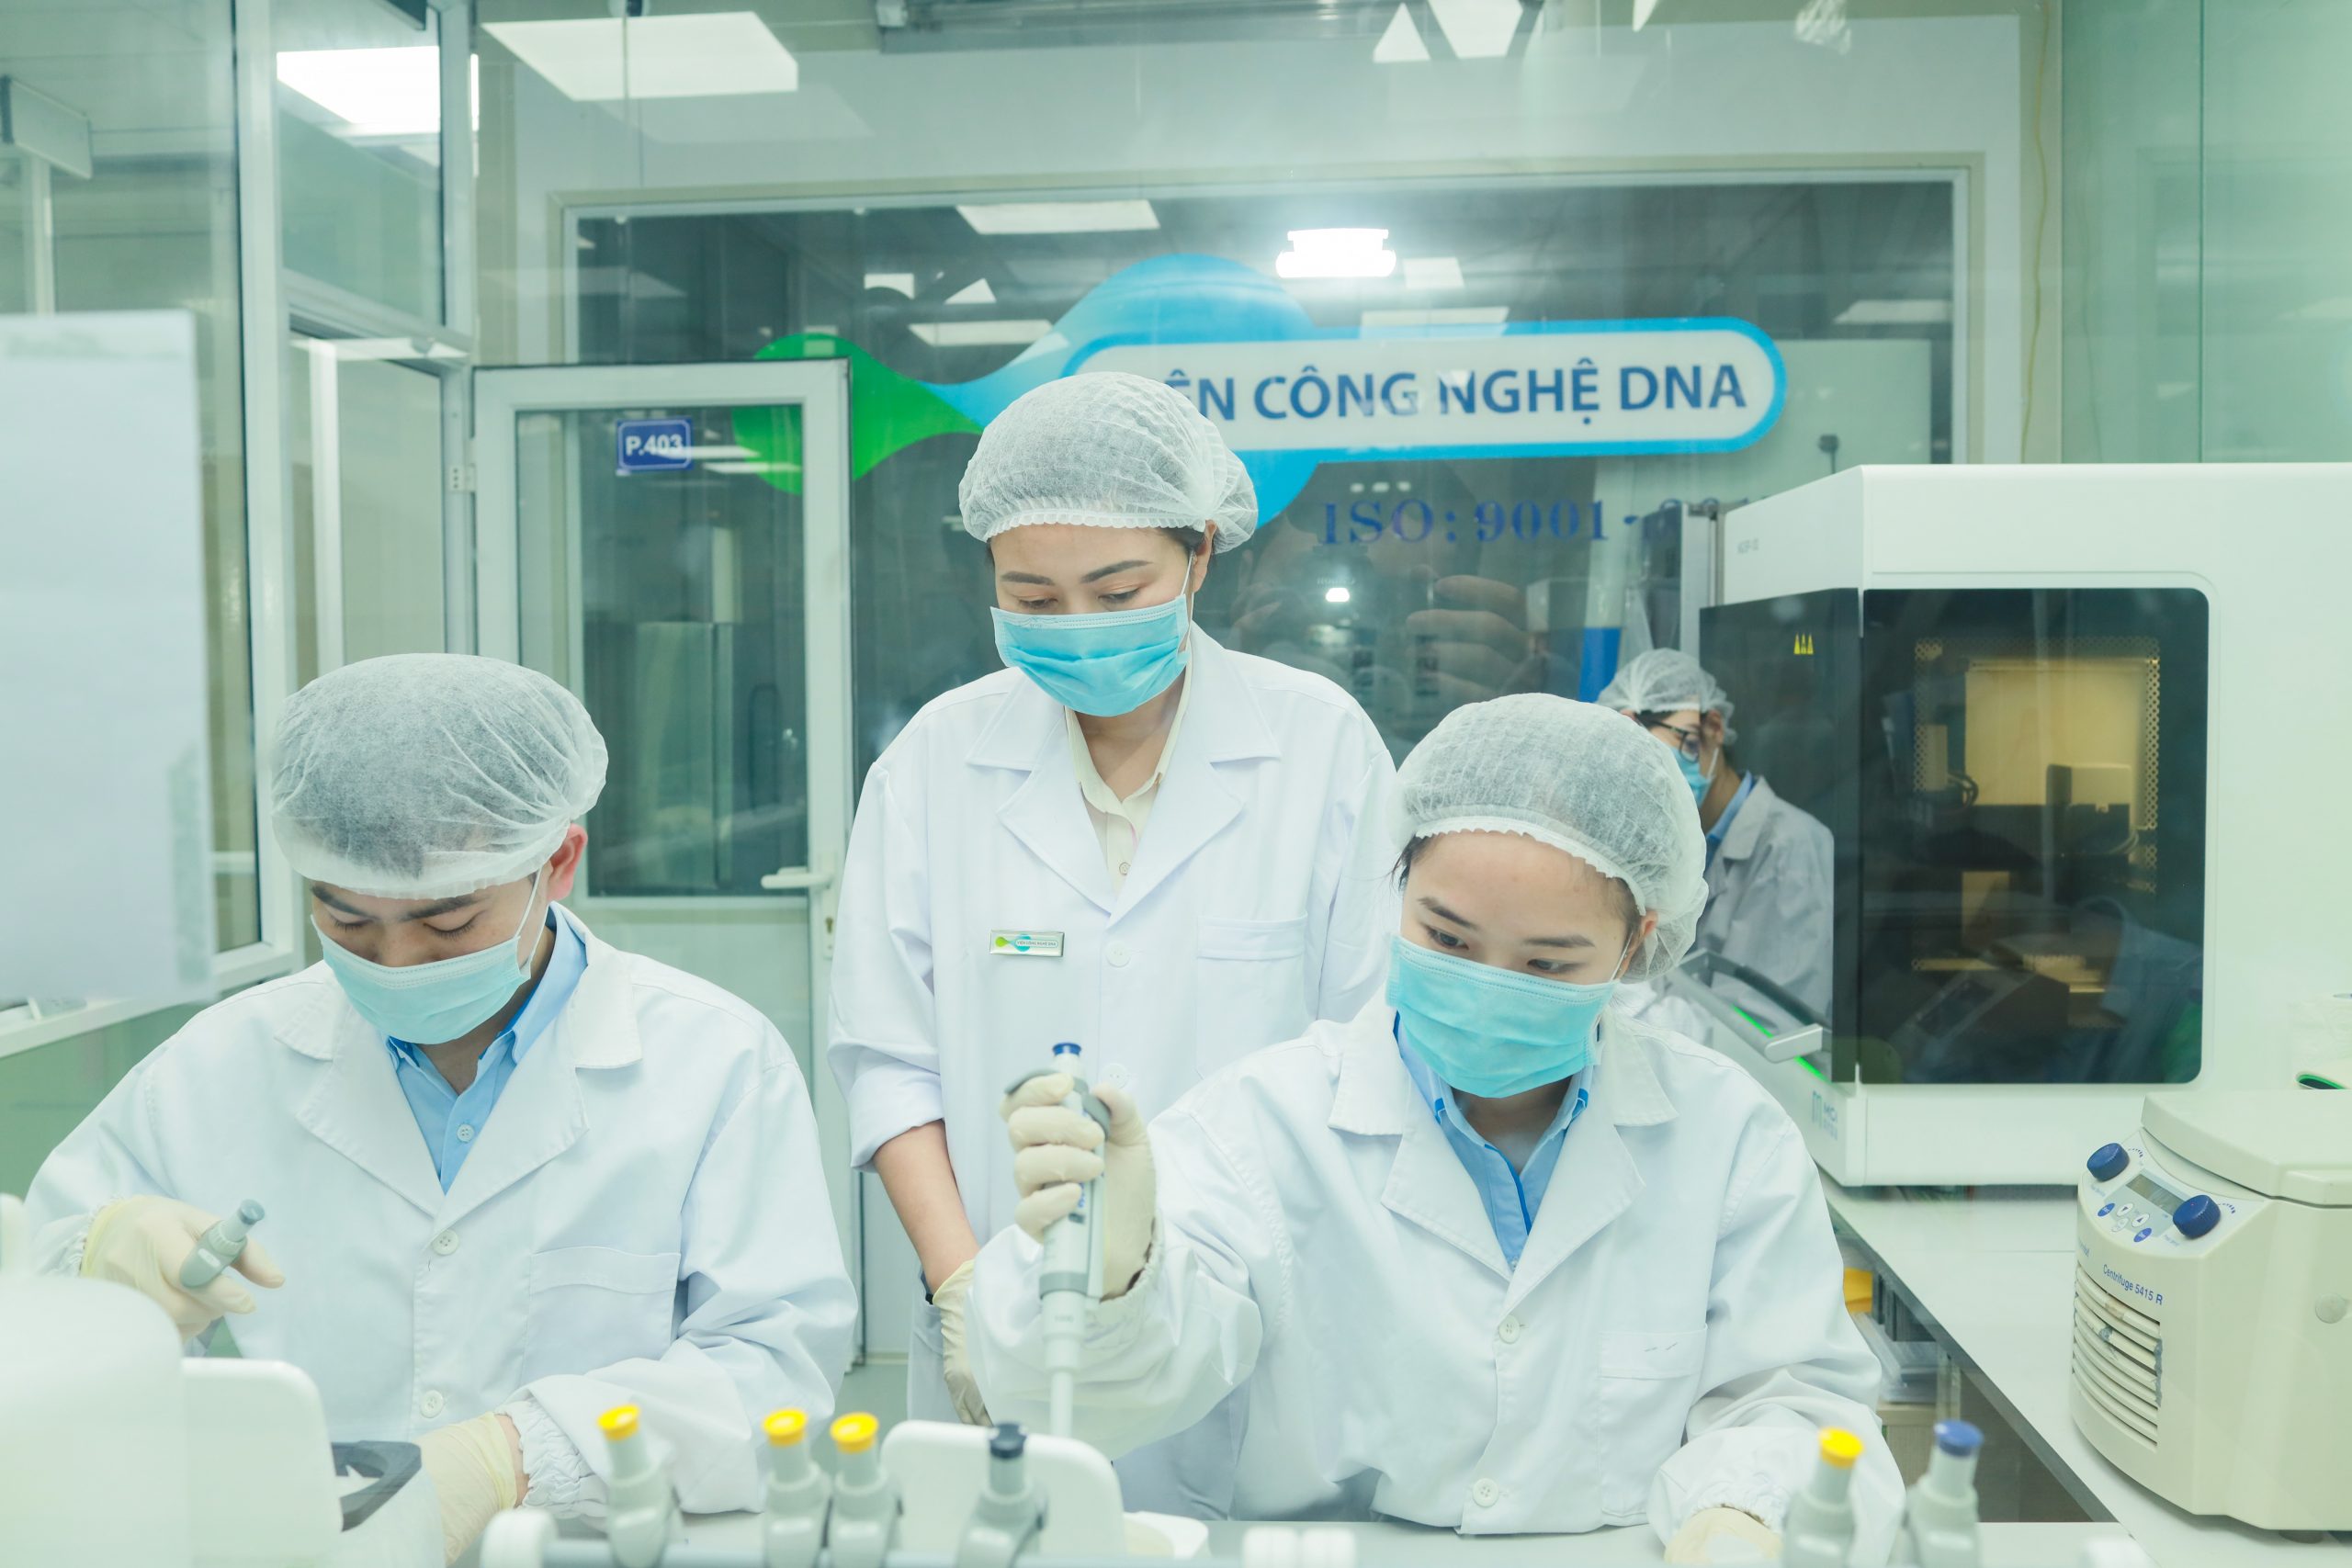 Phòng Xét nghiệm Di truyền Y học Viện Công nghệ DNA được nhiều khách hàng lựa chọn